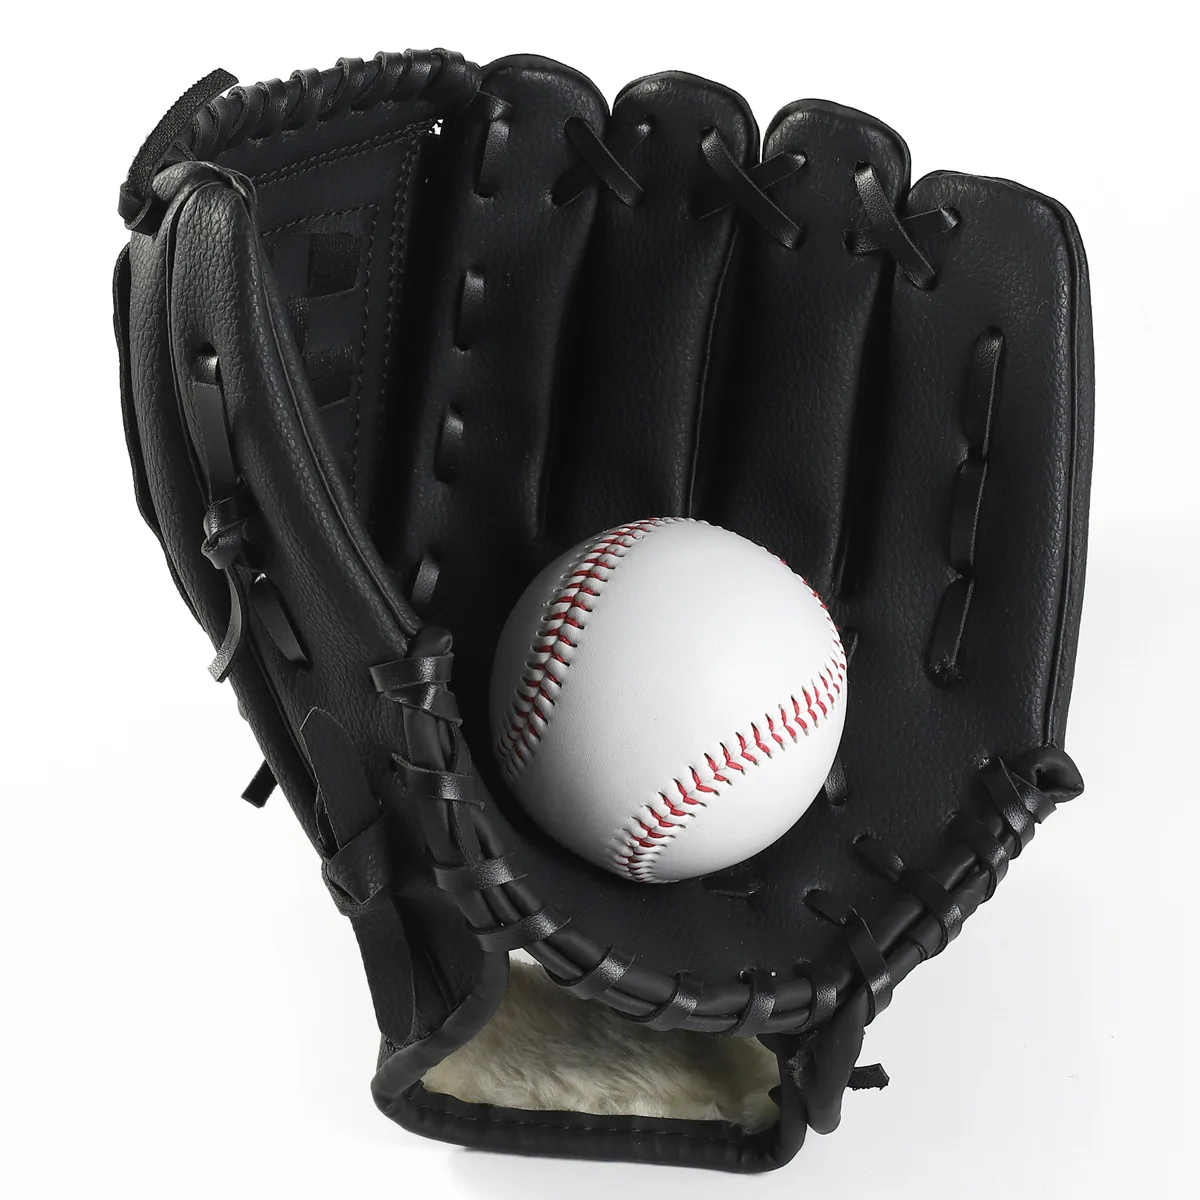 Утолщенная бейсбольная перчатка с внутренним полем для детей и взрослых